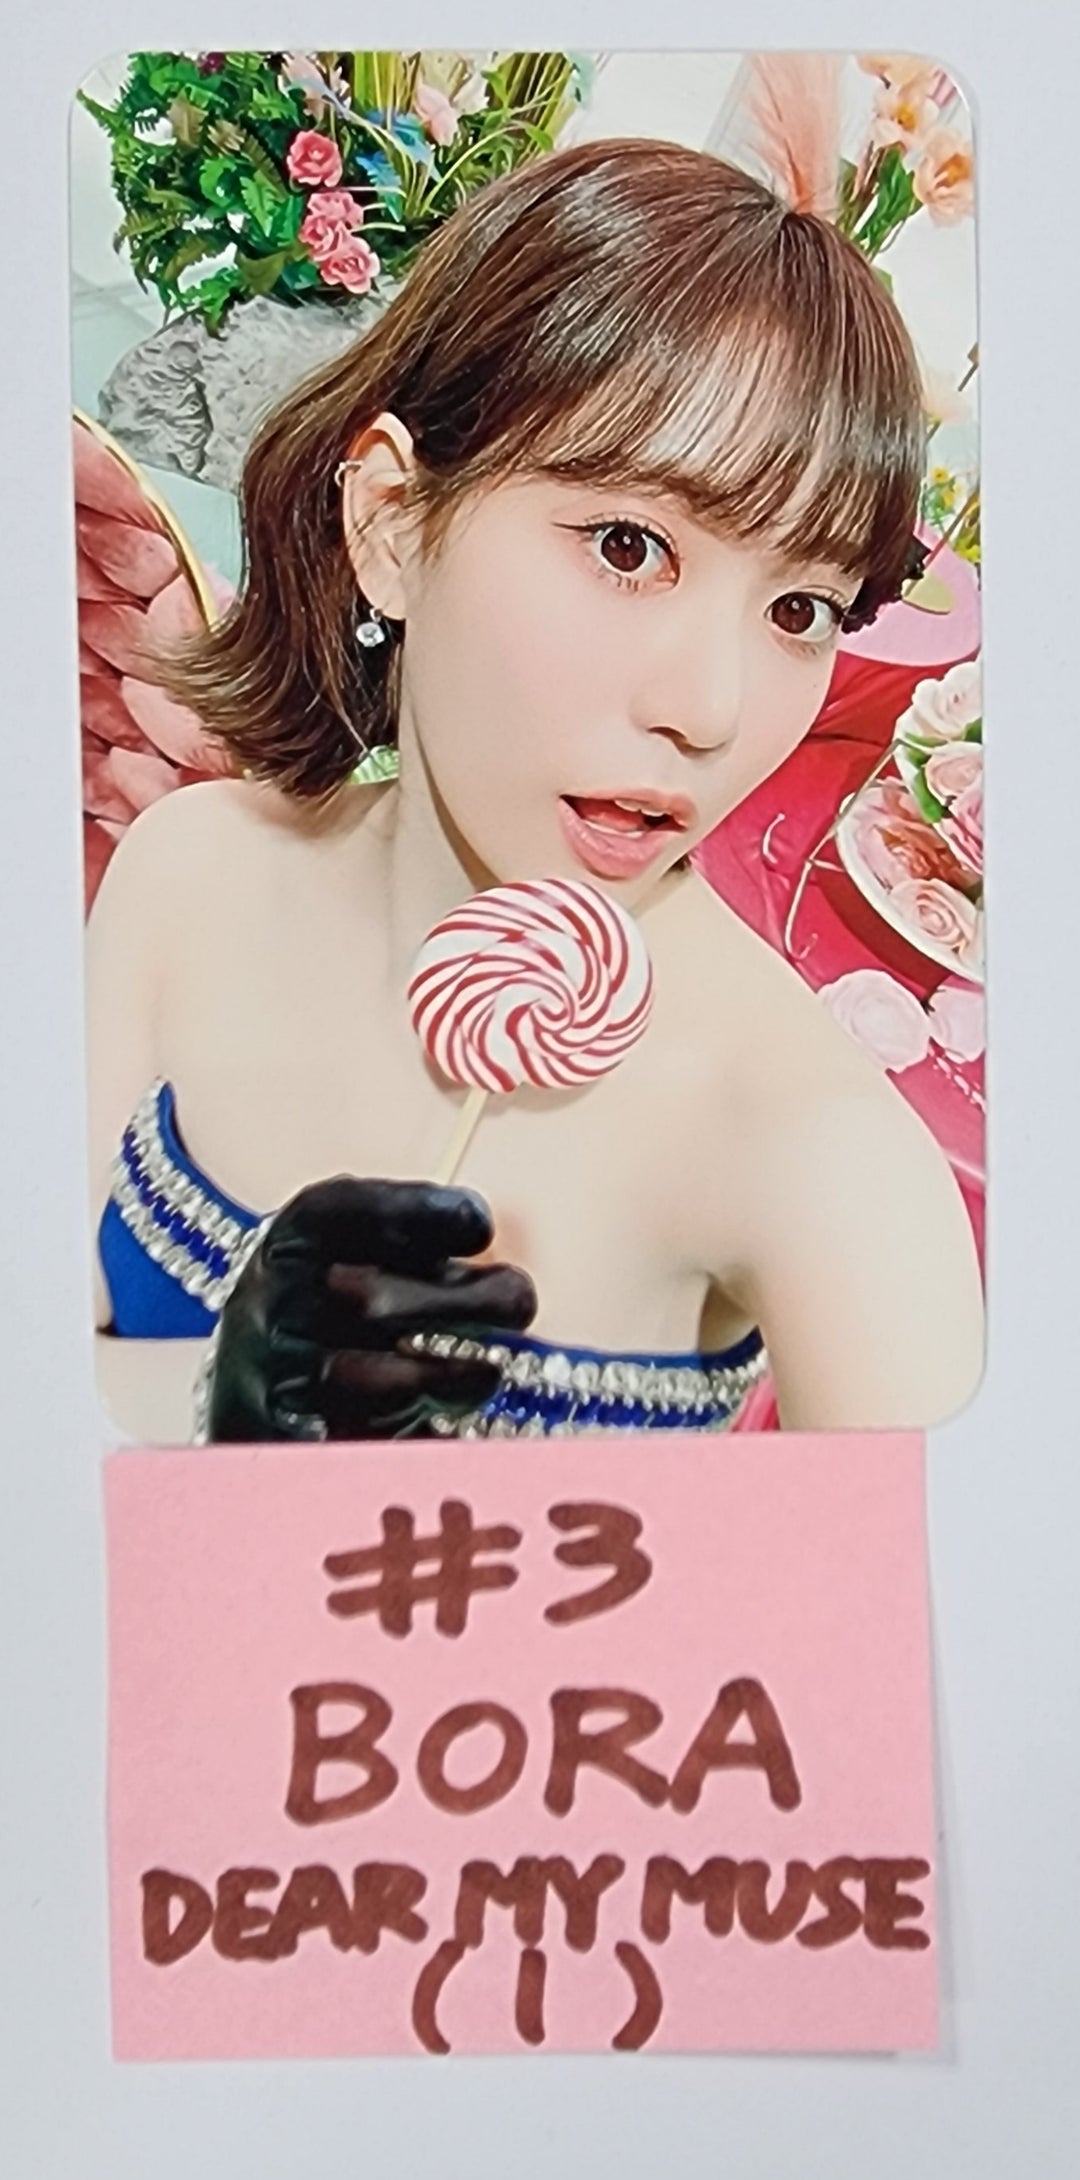 체리블렛 'Cherry Dash' - 디어 마이 뮤즈 팬사인회 이벤트 포토카드